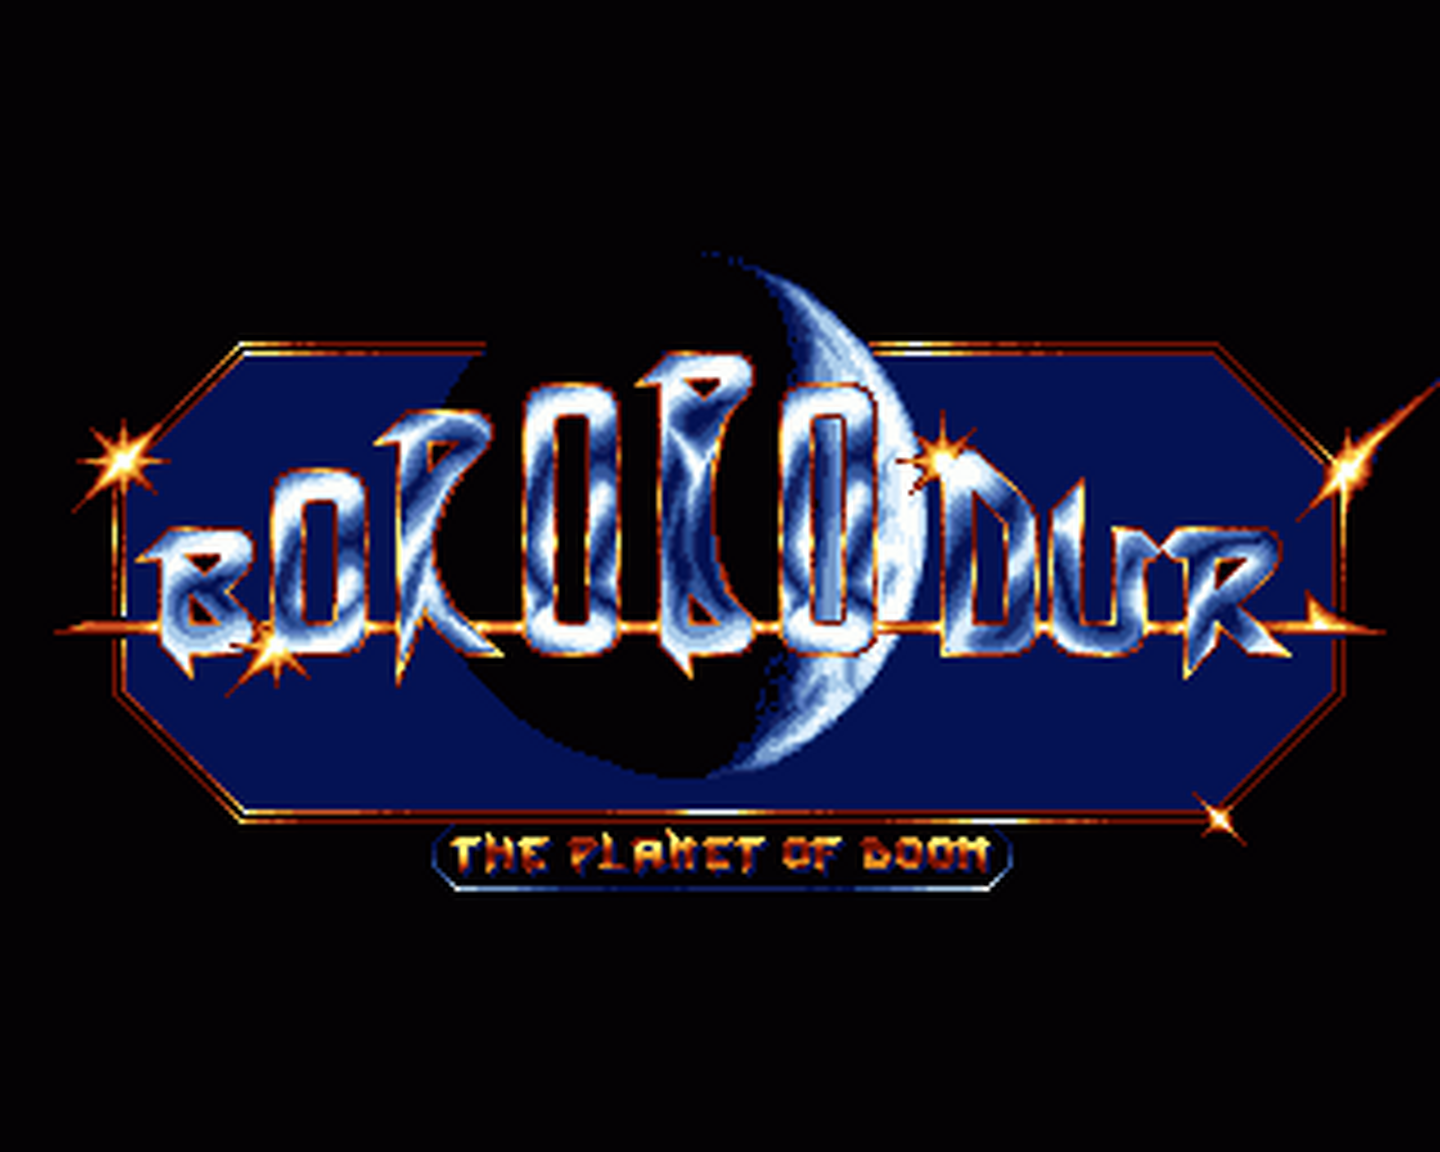 Amiga GameBase Borobodur_-_The_Planet_of_Doom Thalamus 1992